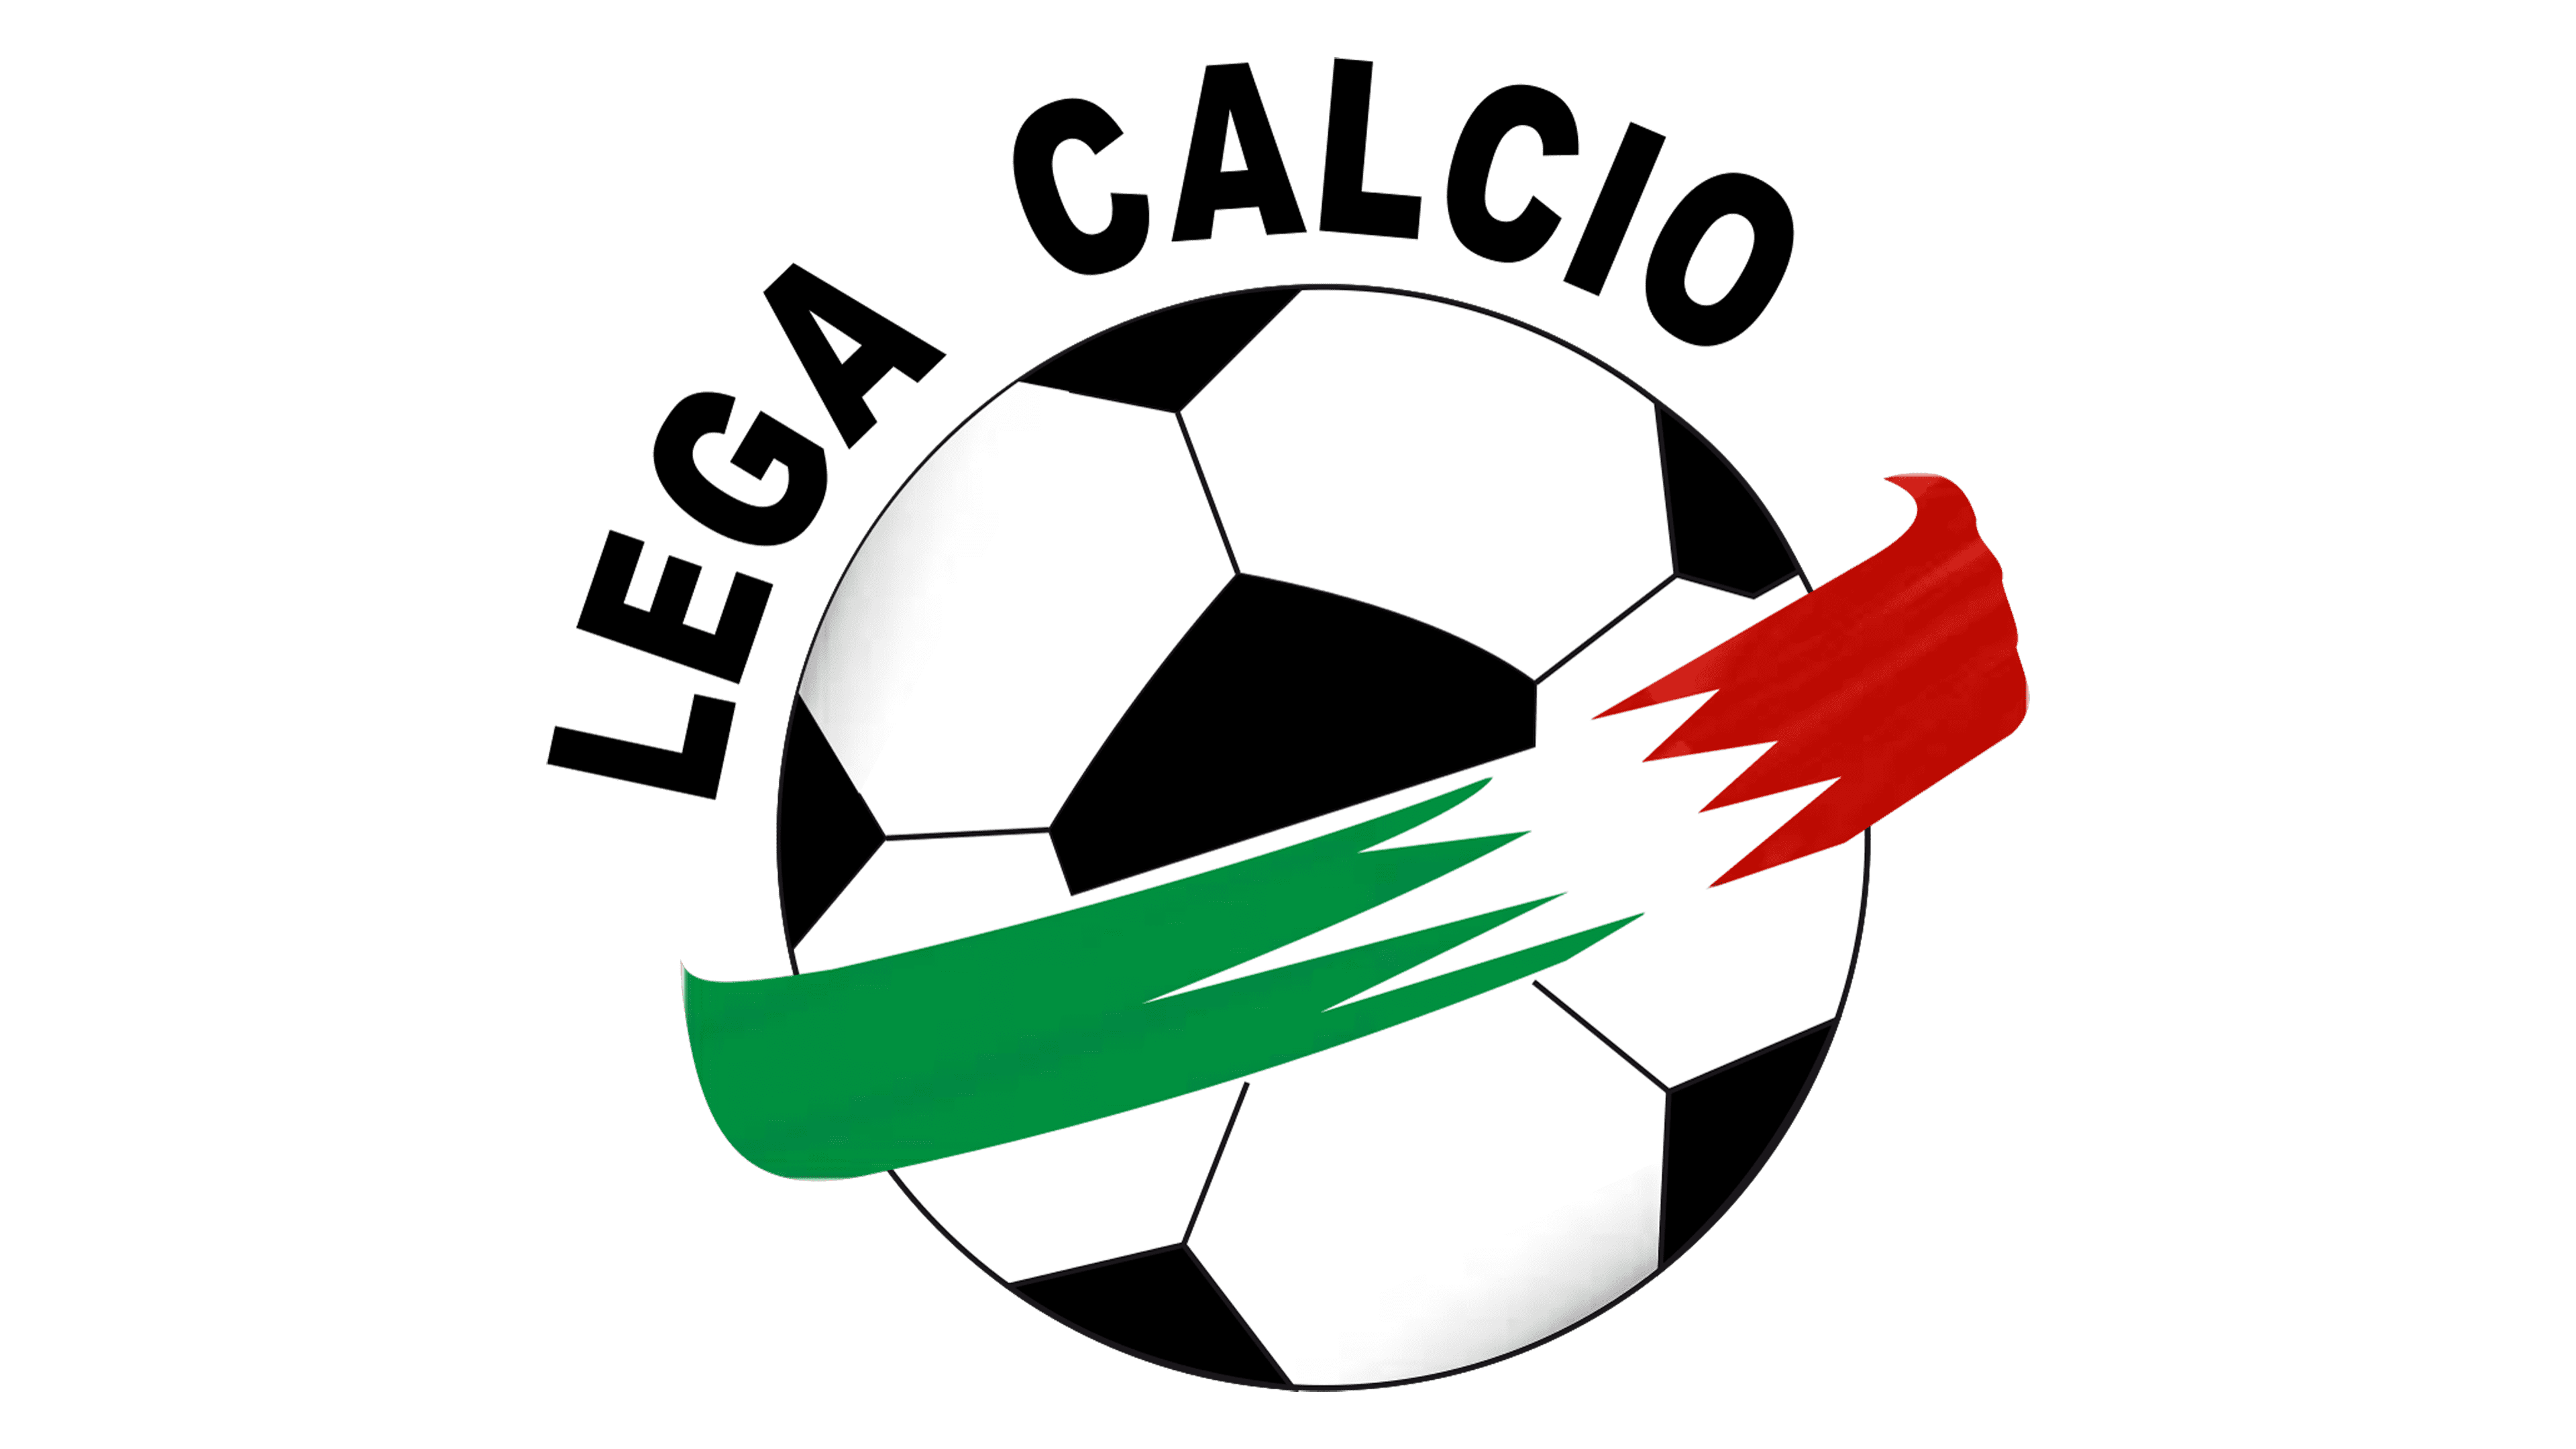 LEGA CALCIO SERIE B badge